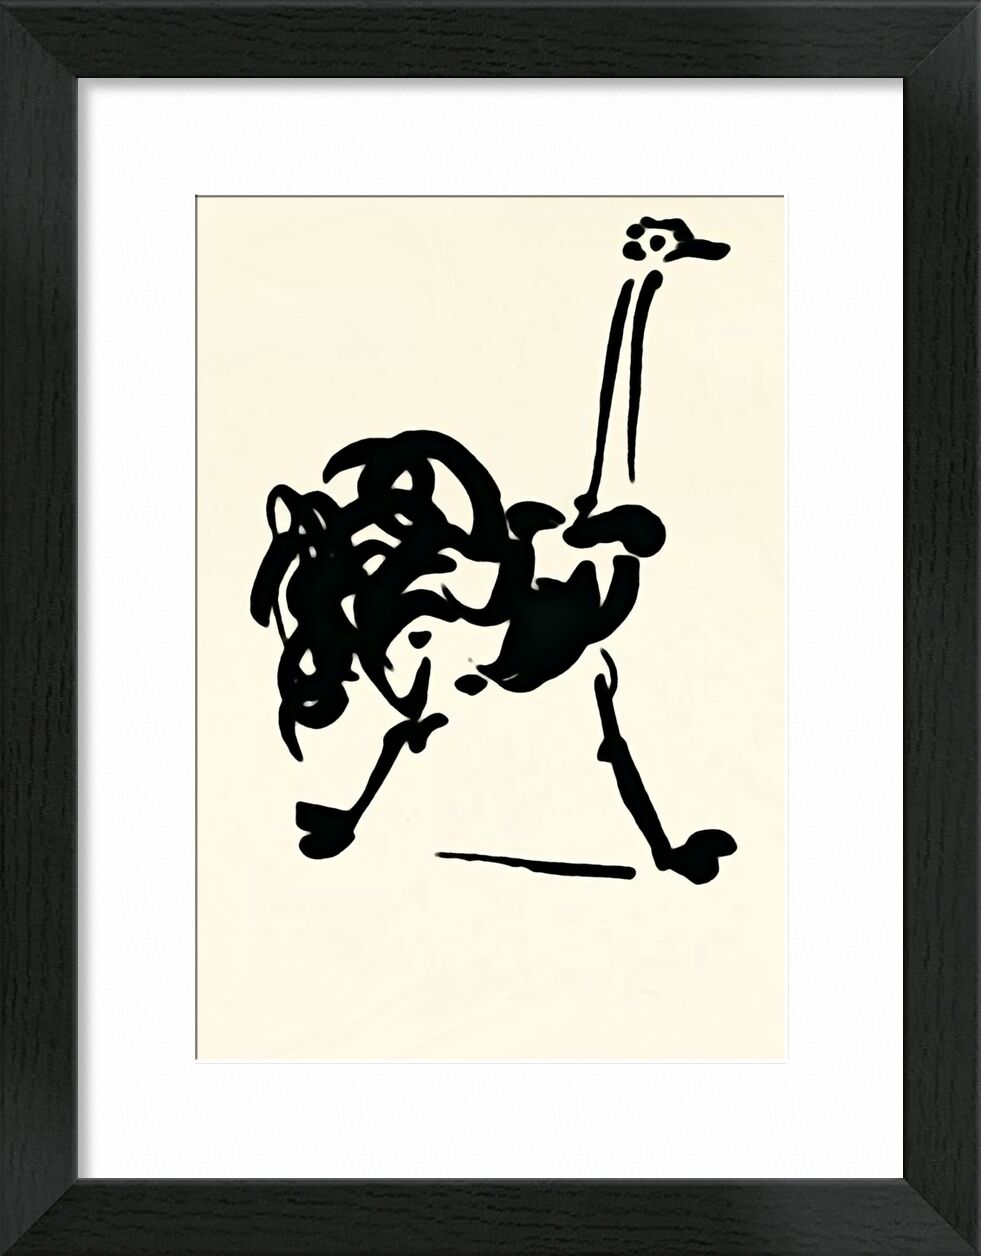 The Ostrich - Picasso von Bildende Kunst, Prodi Art, Strauß, Strichzeichnung, Zeichnung, Picasso